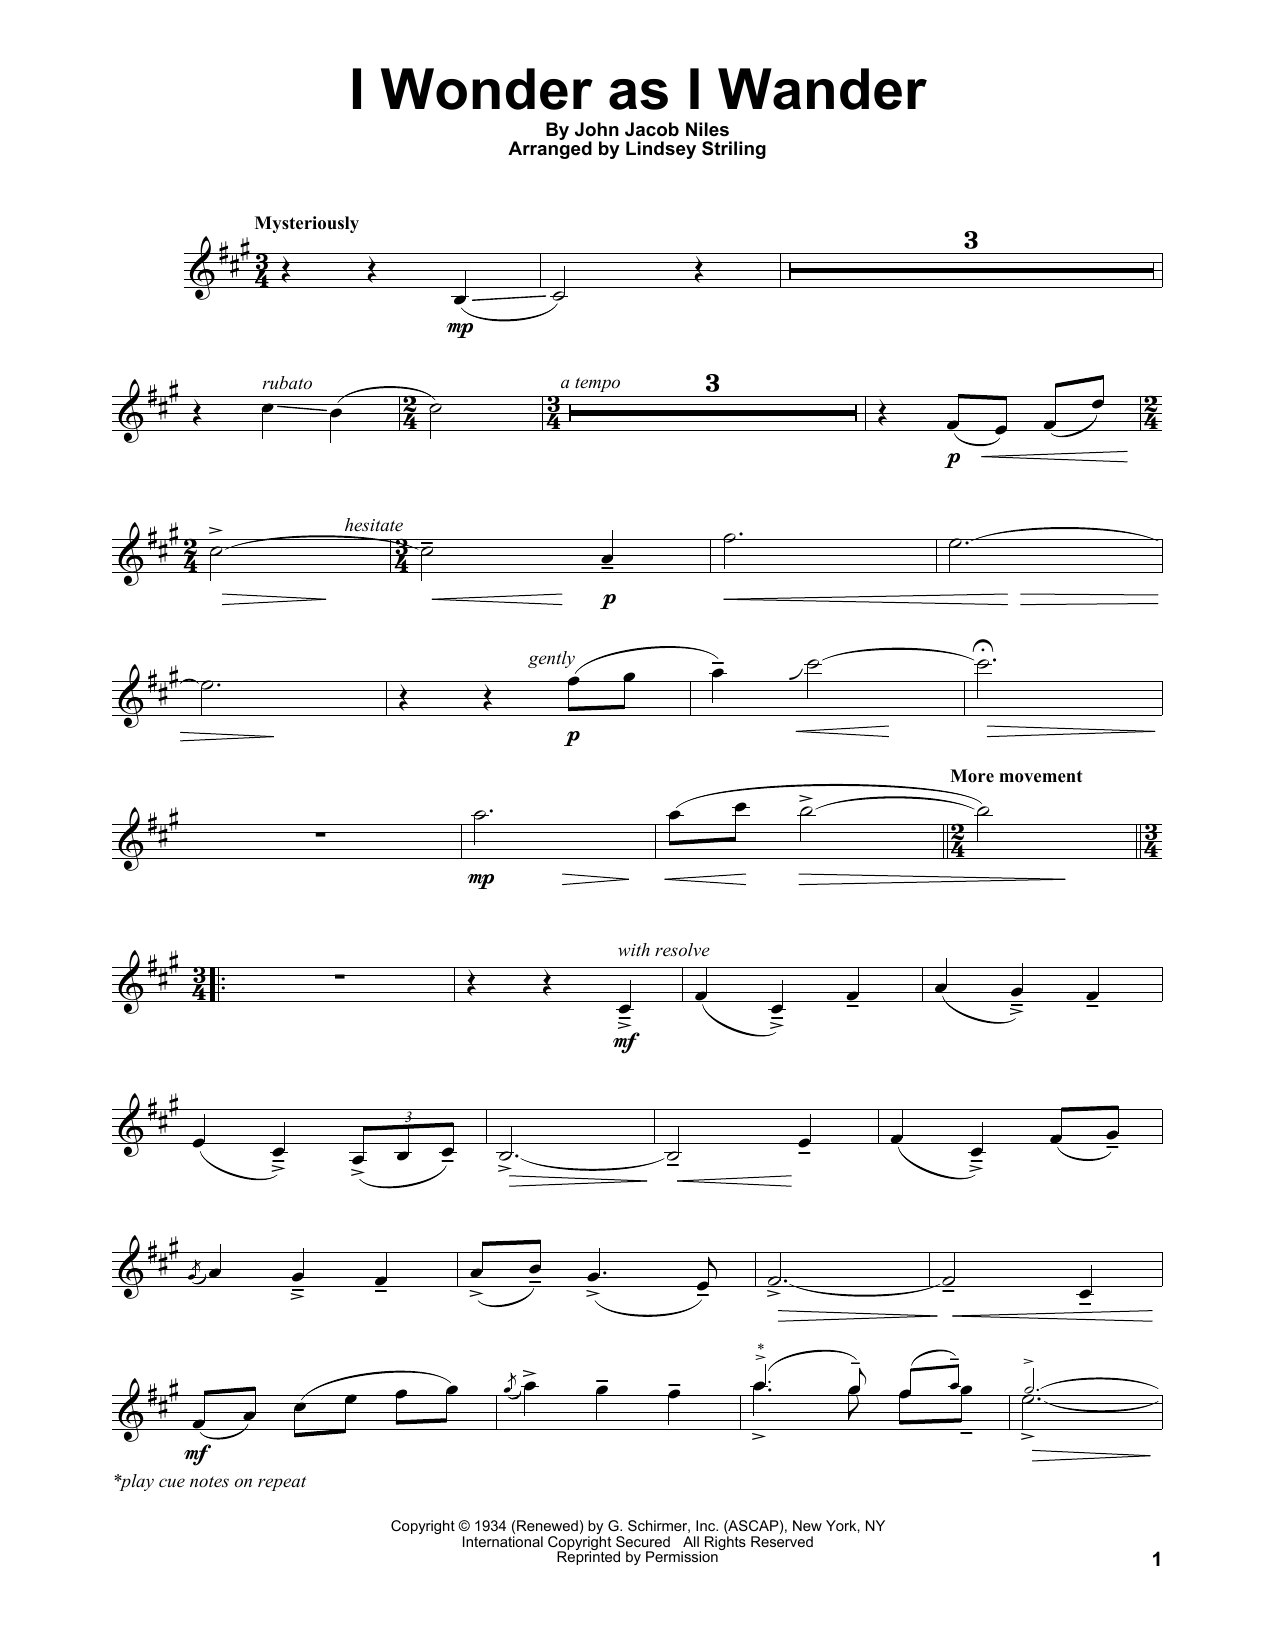 Lindsey Stirling I Wonder As I Wander Sheet Music Notes & Chords for Violin Solo - Download or Print PDF